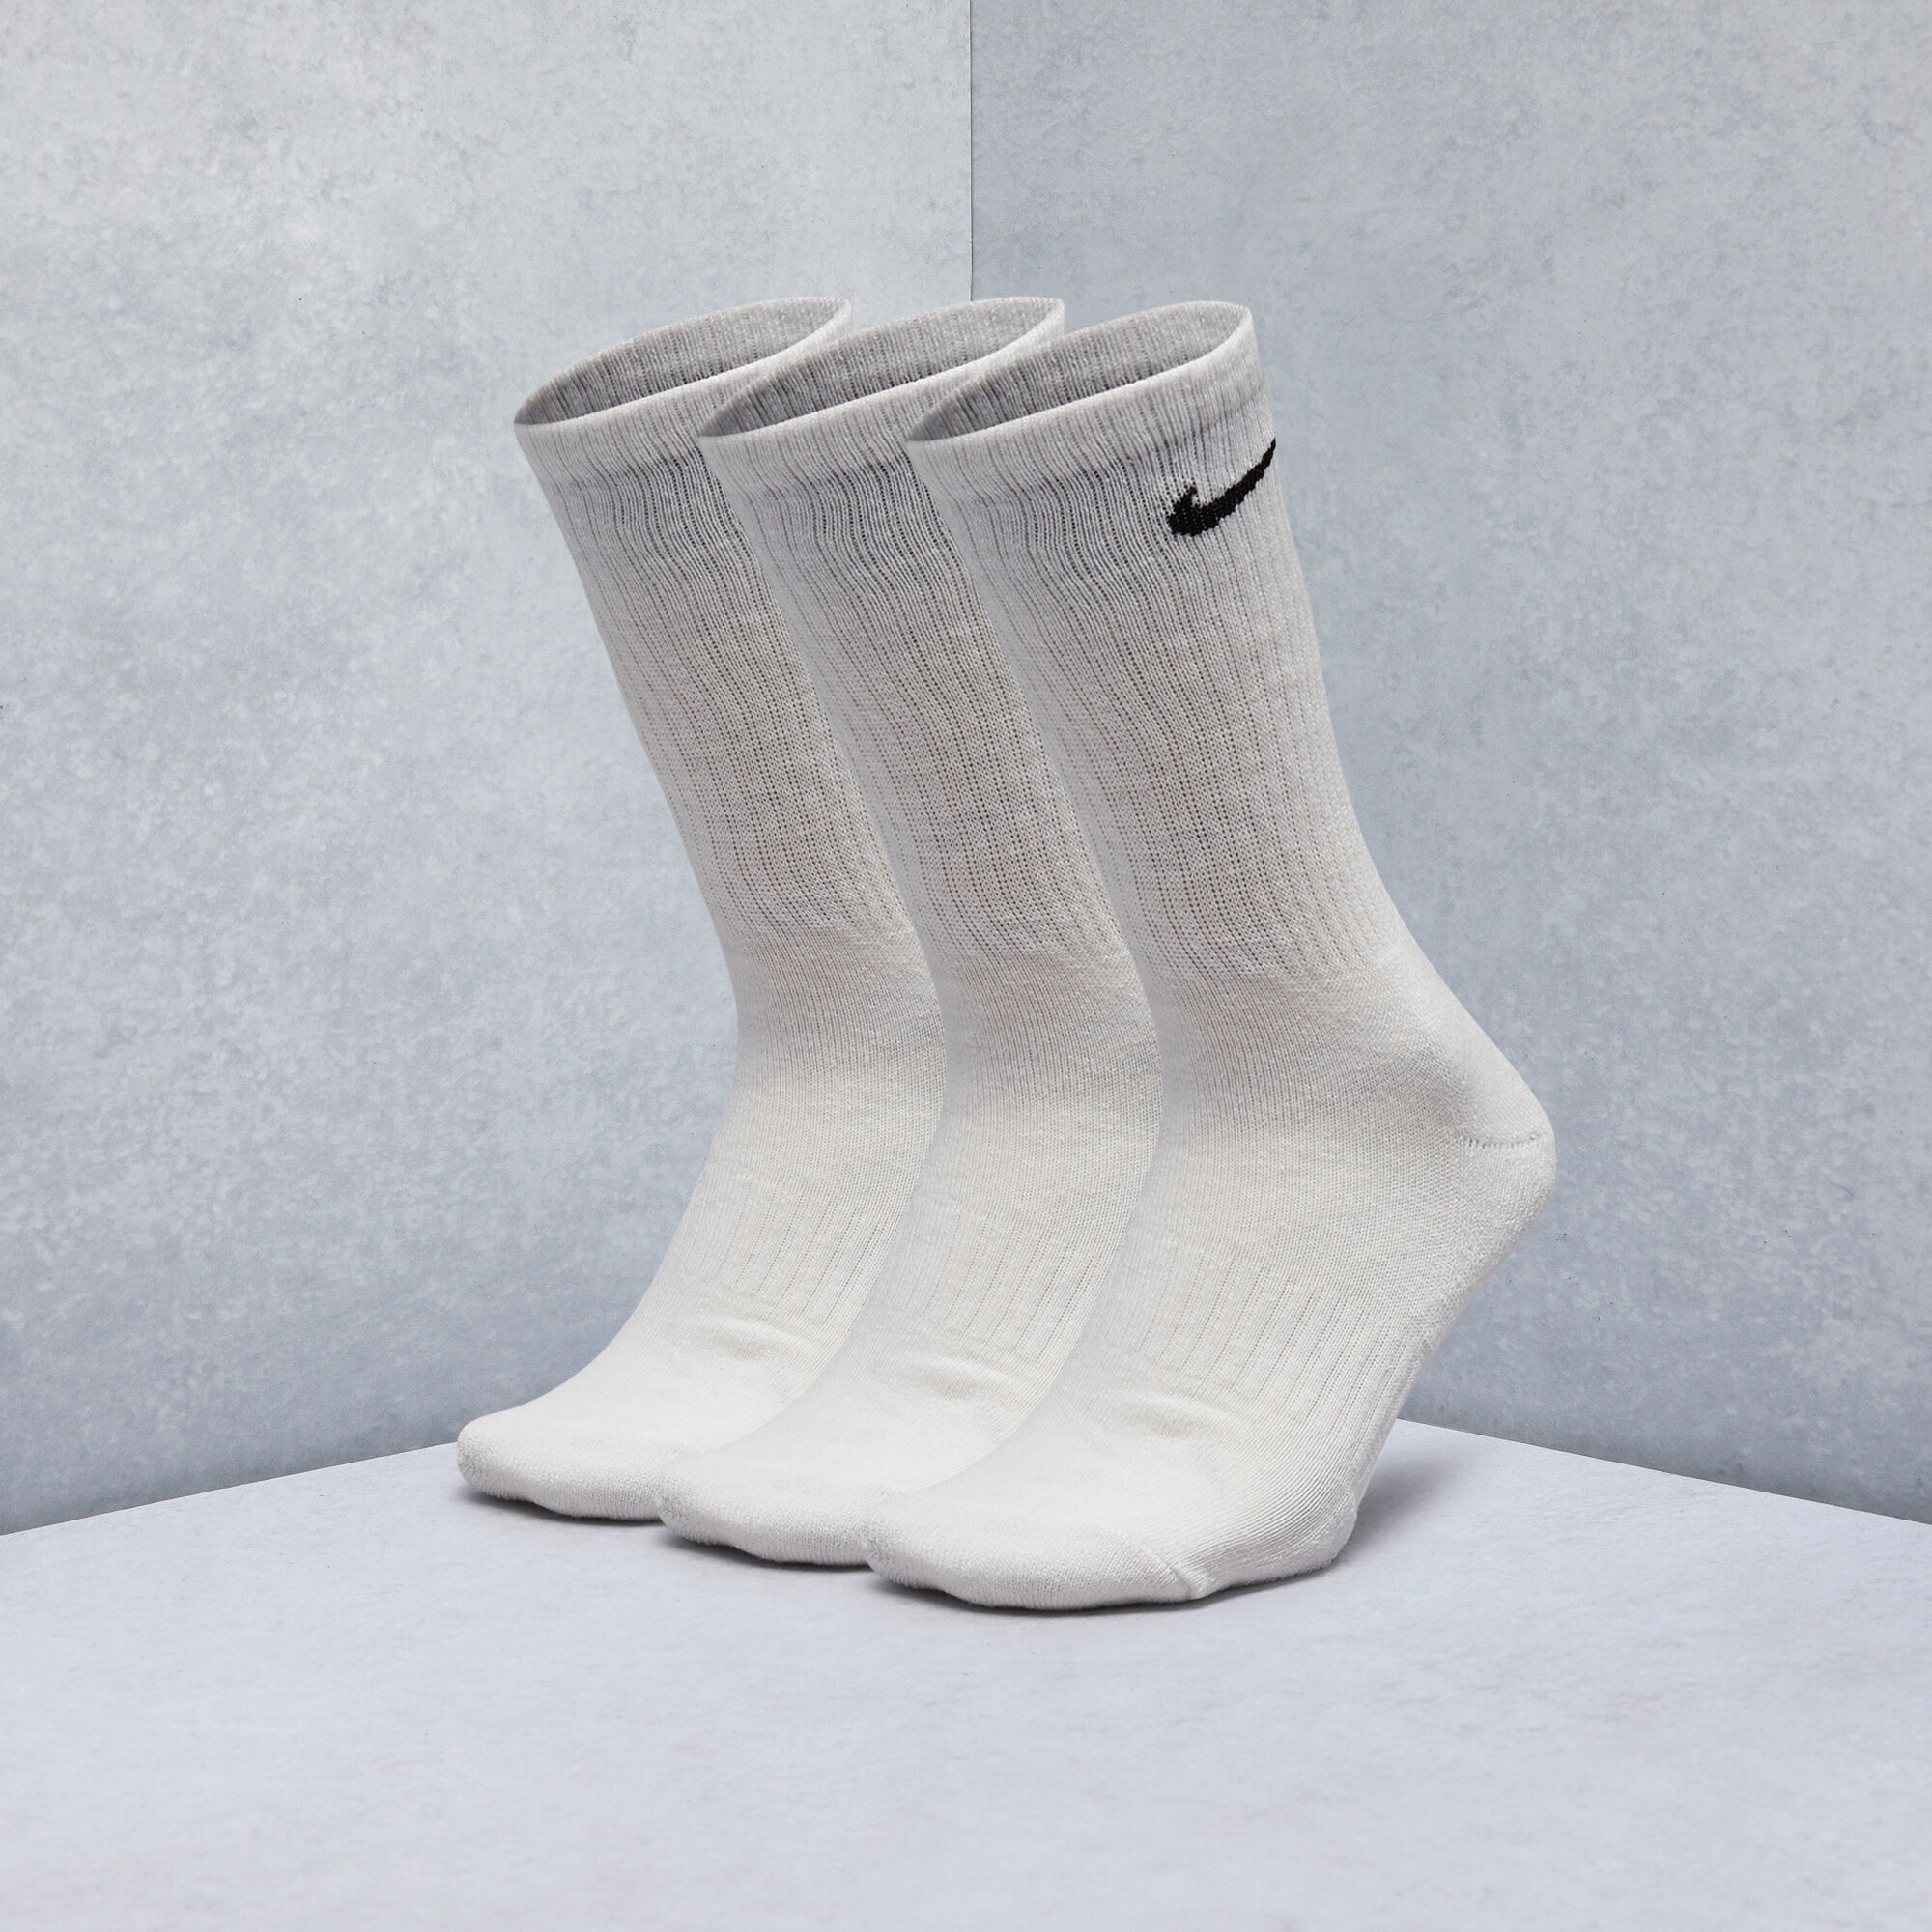 Nike Everyday 3 Pack Cotton Cushioned Crew Socks Unisex